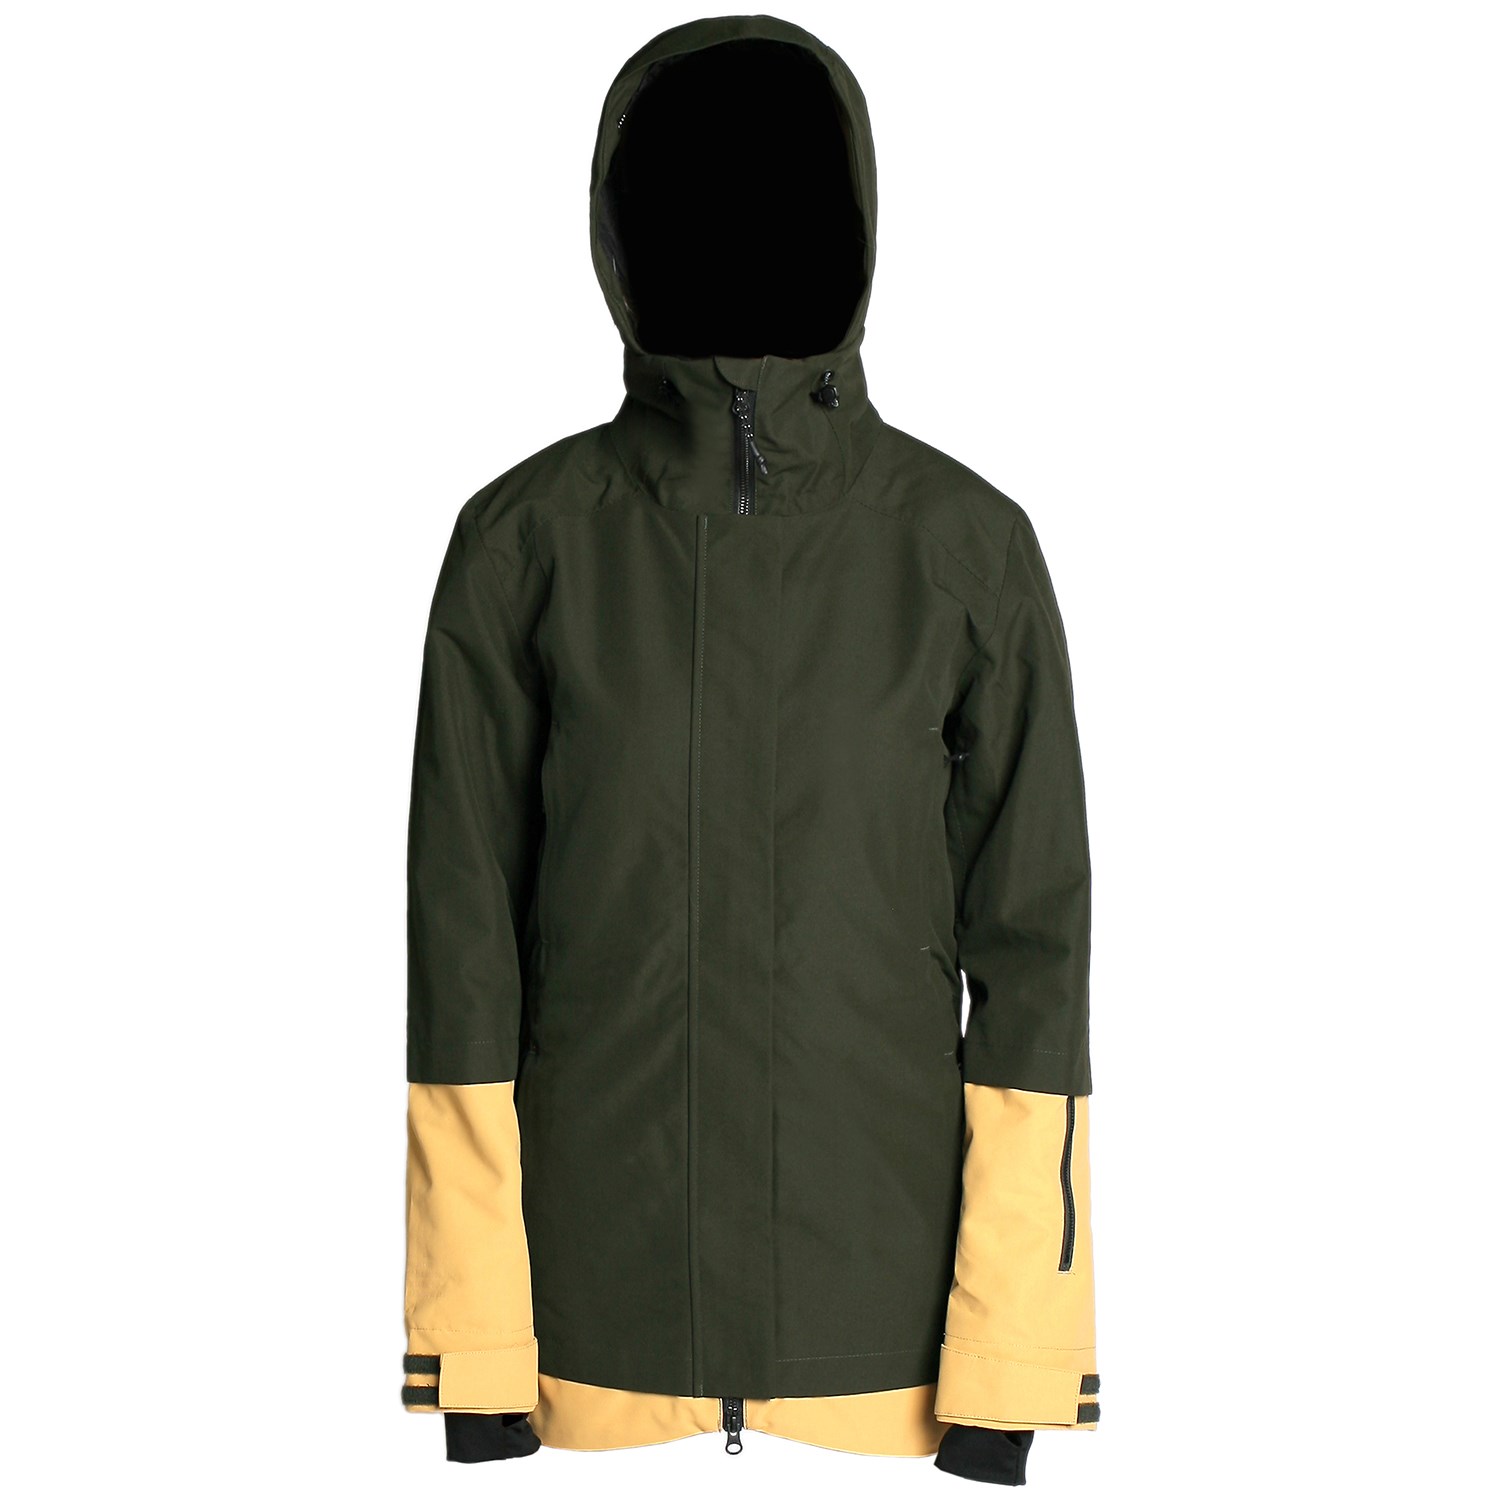 Куртка женская Imperial Motion утепленная, темно-зеленый куртка женская luhta цвет темно зеленый 232402345l7v размер 36 44